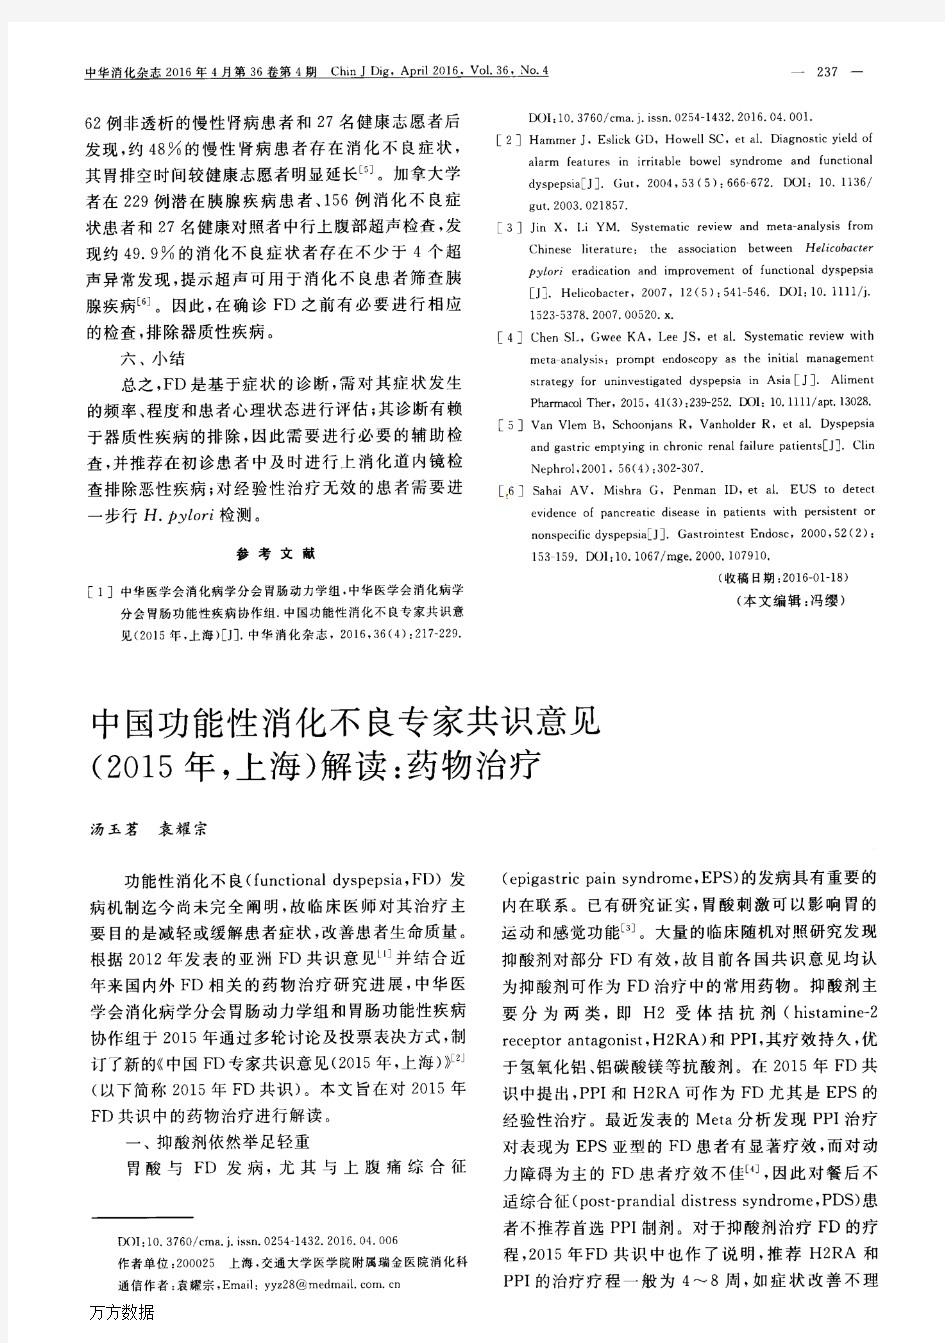 中国功能性消化不良专家共识意见(2015年,上海)解读药物治疗论文